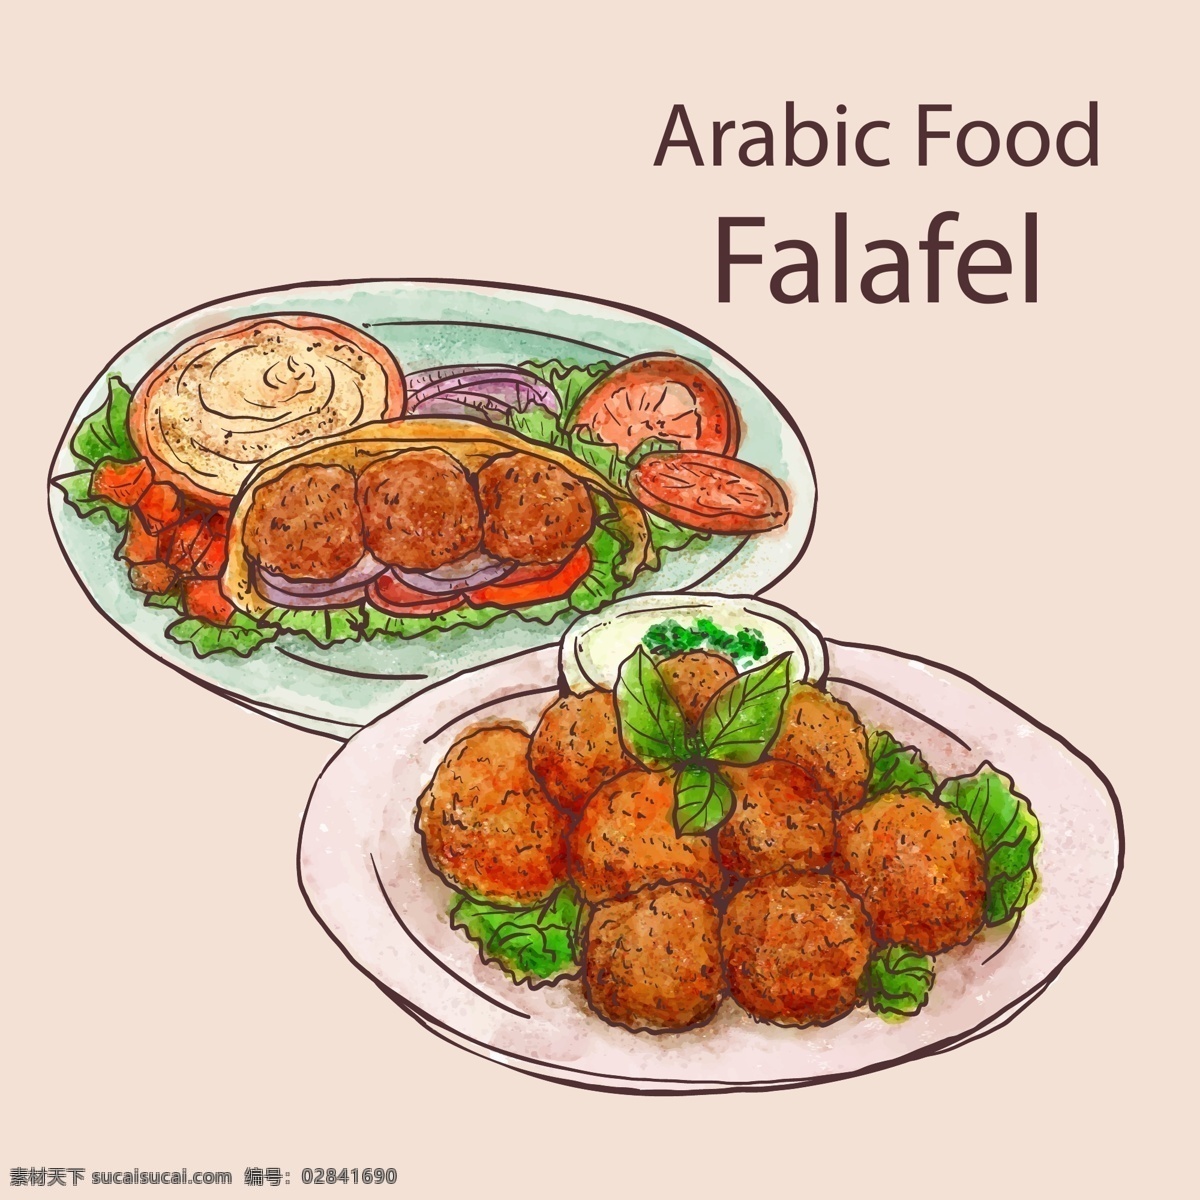 手绘美食菜单 食品 菜单 手 餐厅 手绘 阿拉伯语 烹饪 有机 绘图 健康 菜 食谱 饮食 膳食 抽纱 有机食品 粉色